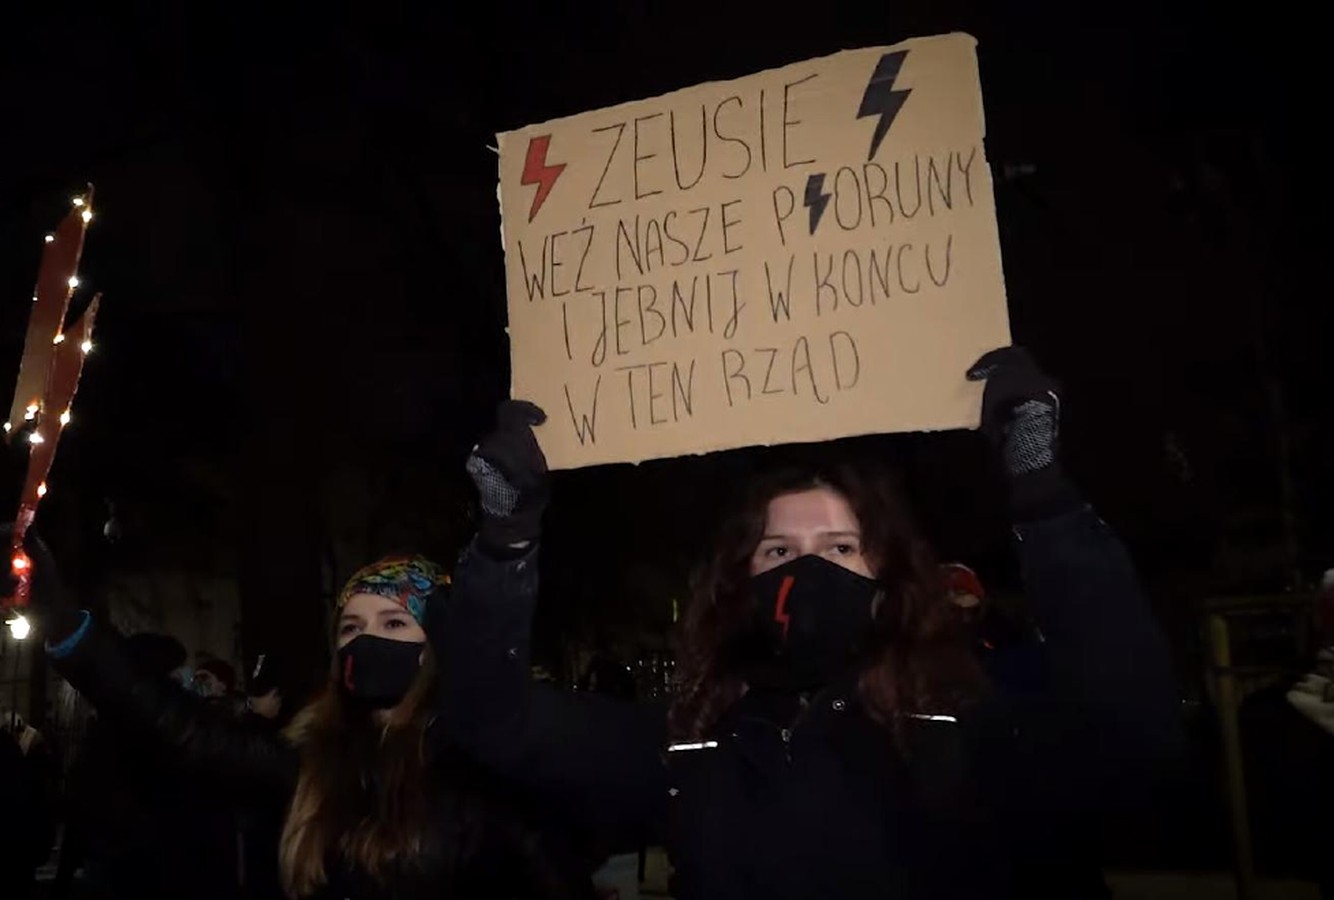 propolski.pl: Impreza podczas Strajku Kobiet: "Zeusie, weź nasze pioruny i je*nij w końcu w ten rząd" [WIDEO]